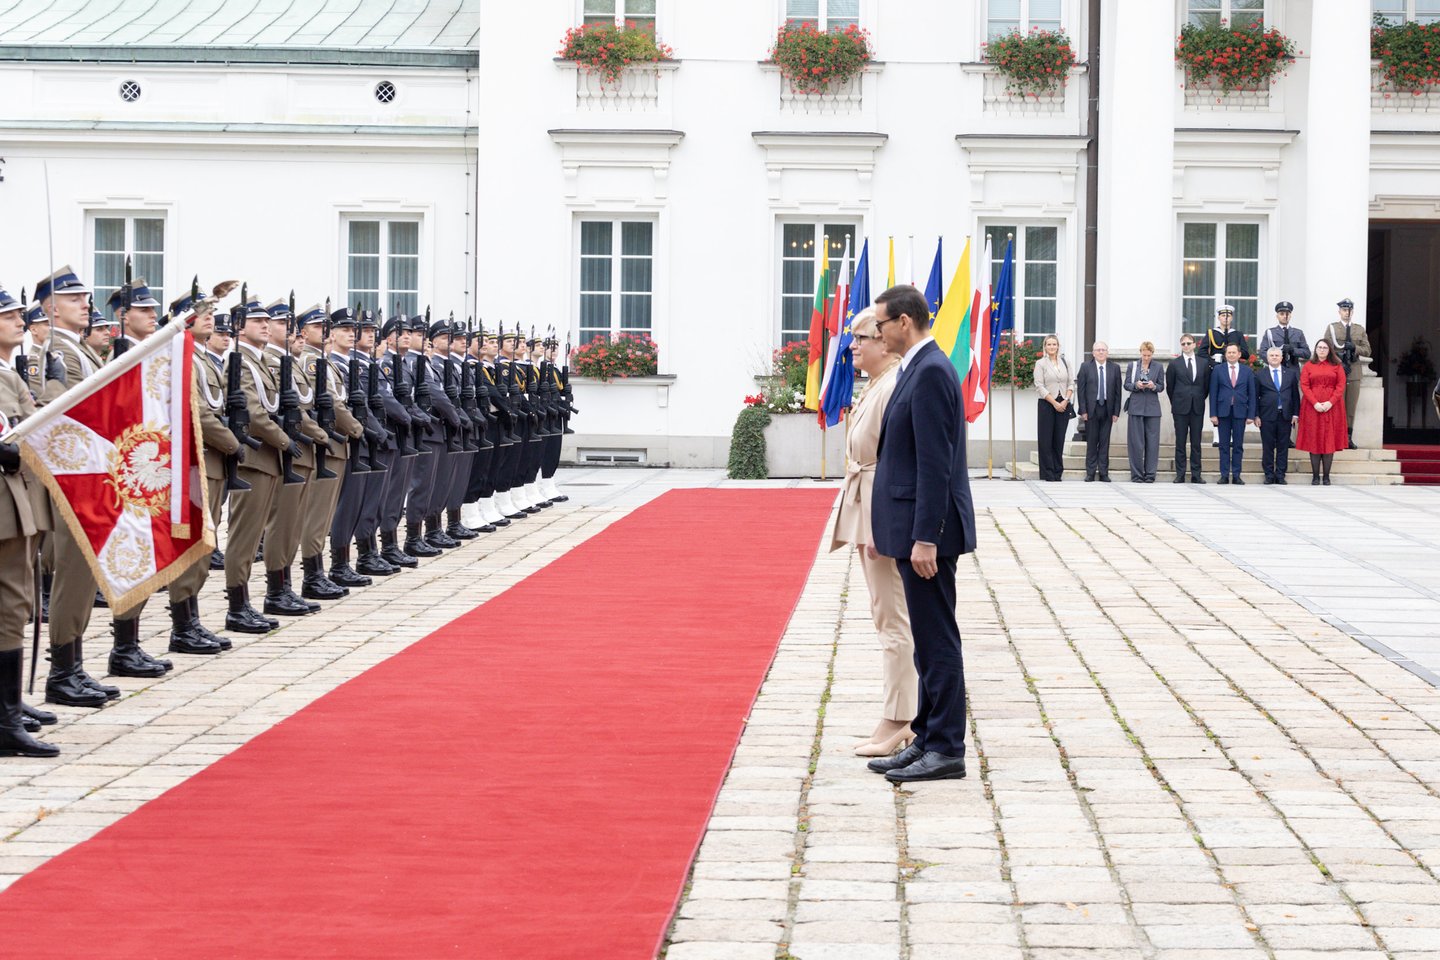  Varšuvoje vyko antrasis bendras Lietuvos ir Lenkijos vyriausybių posėdis, kuriam pirmininkavo I.Šimonytė ir Lenkijos Ministras Pirmininkas M.Morawieckis. <br> LRVK/L.Penek nuotr.